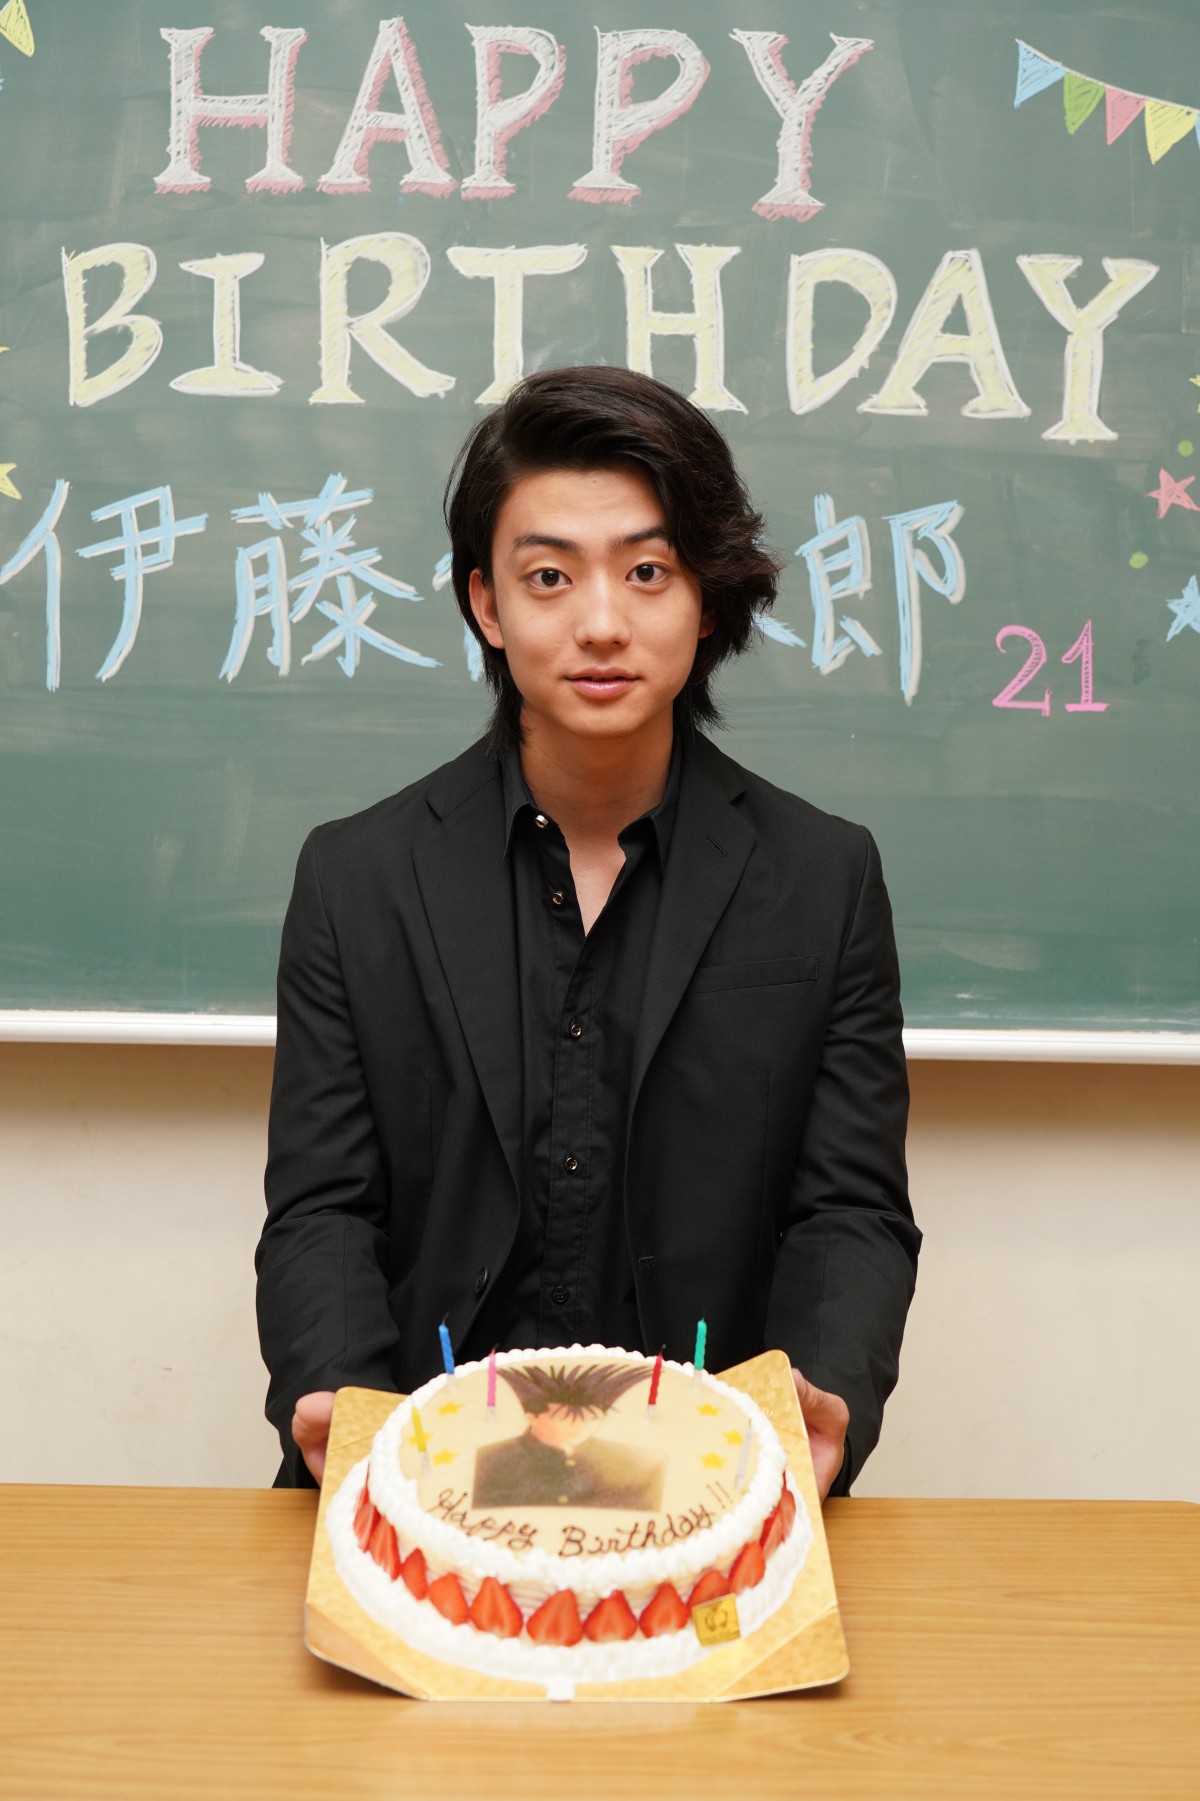 健太郎「今日から俺は、伊藤健太郎」 21歳の誕生日に改名を発表